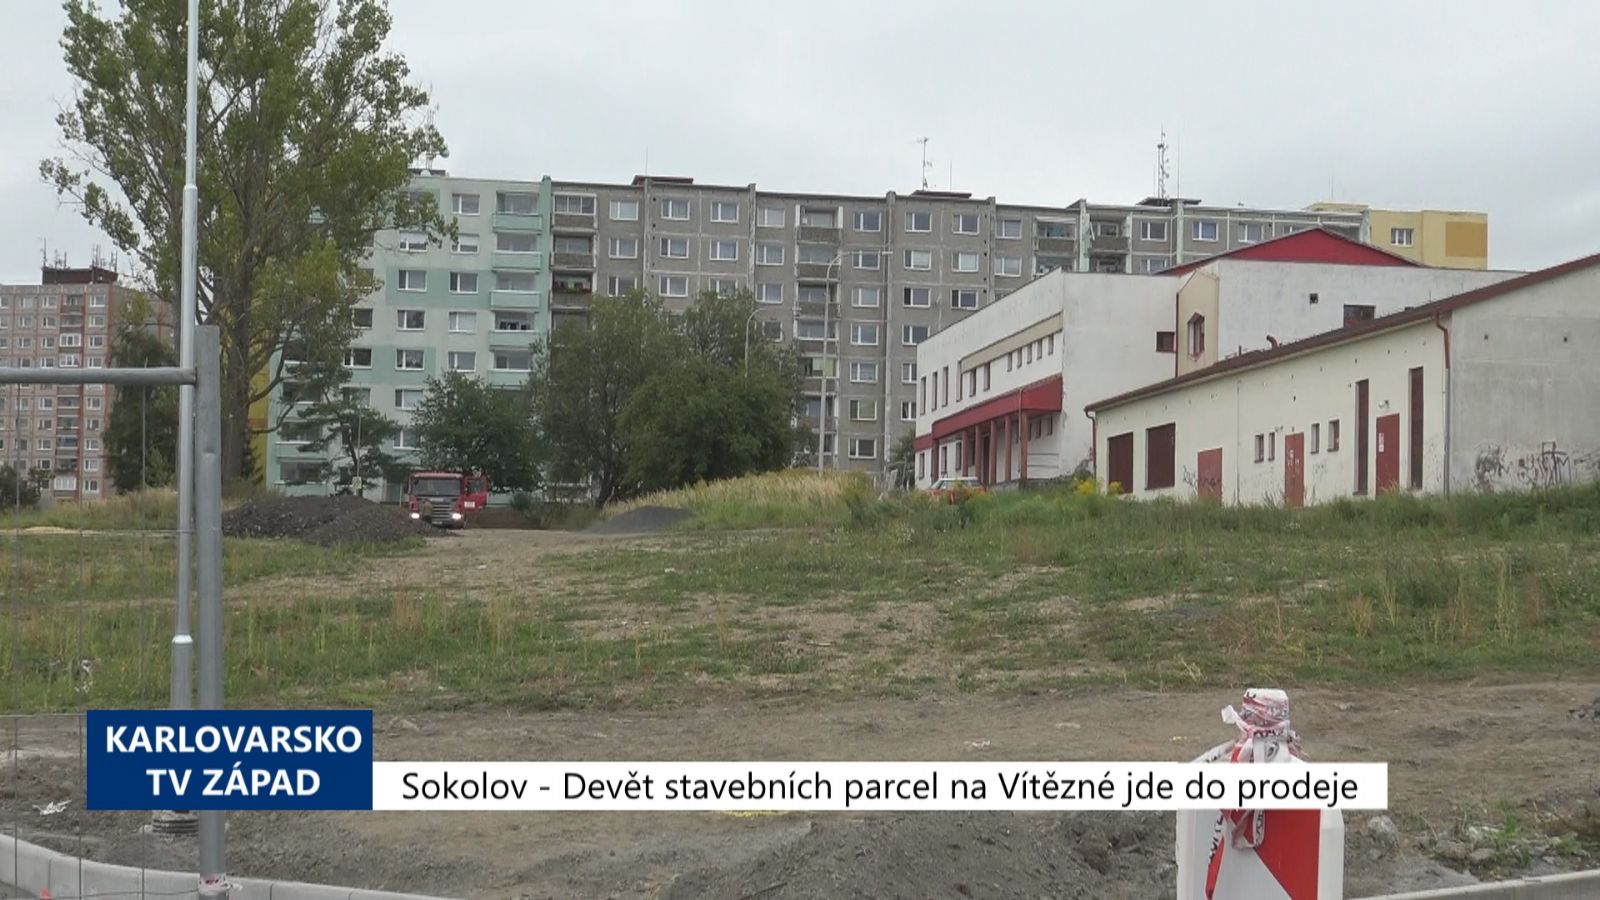 Sokolov: Devět stavebních parcel na Vítězné jde do prodeje (TV Západ)